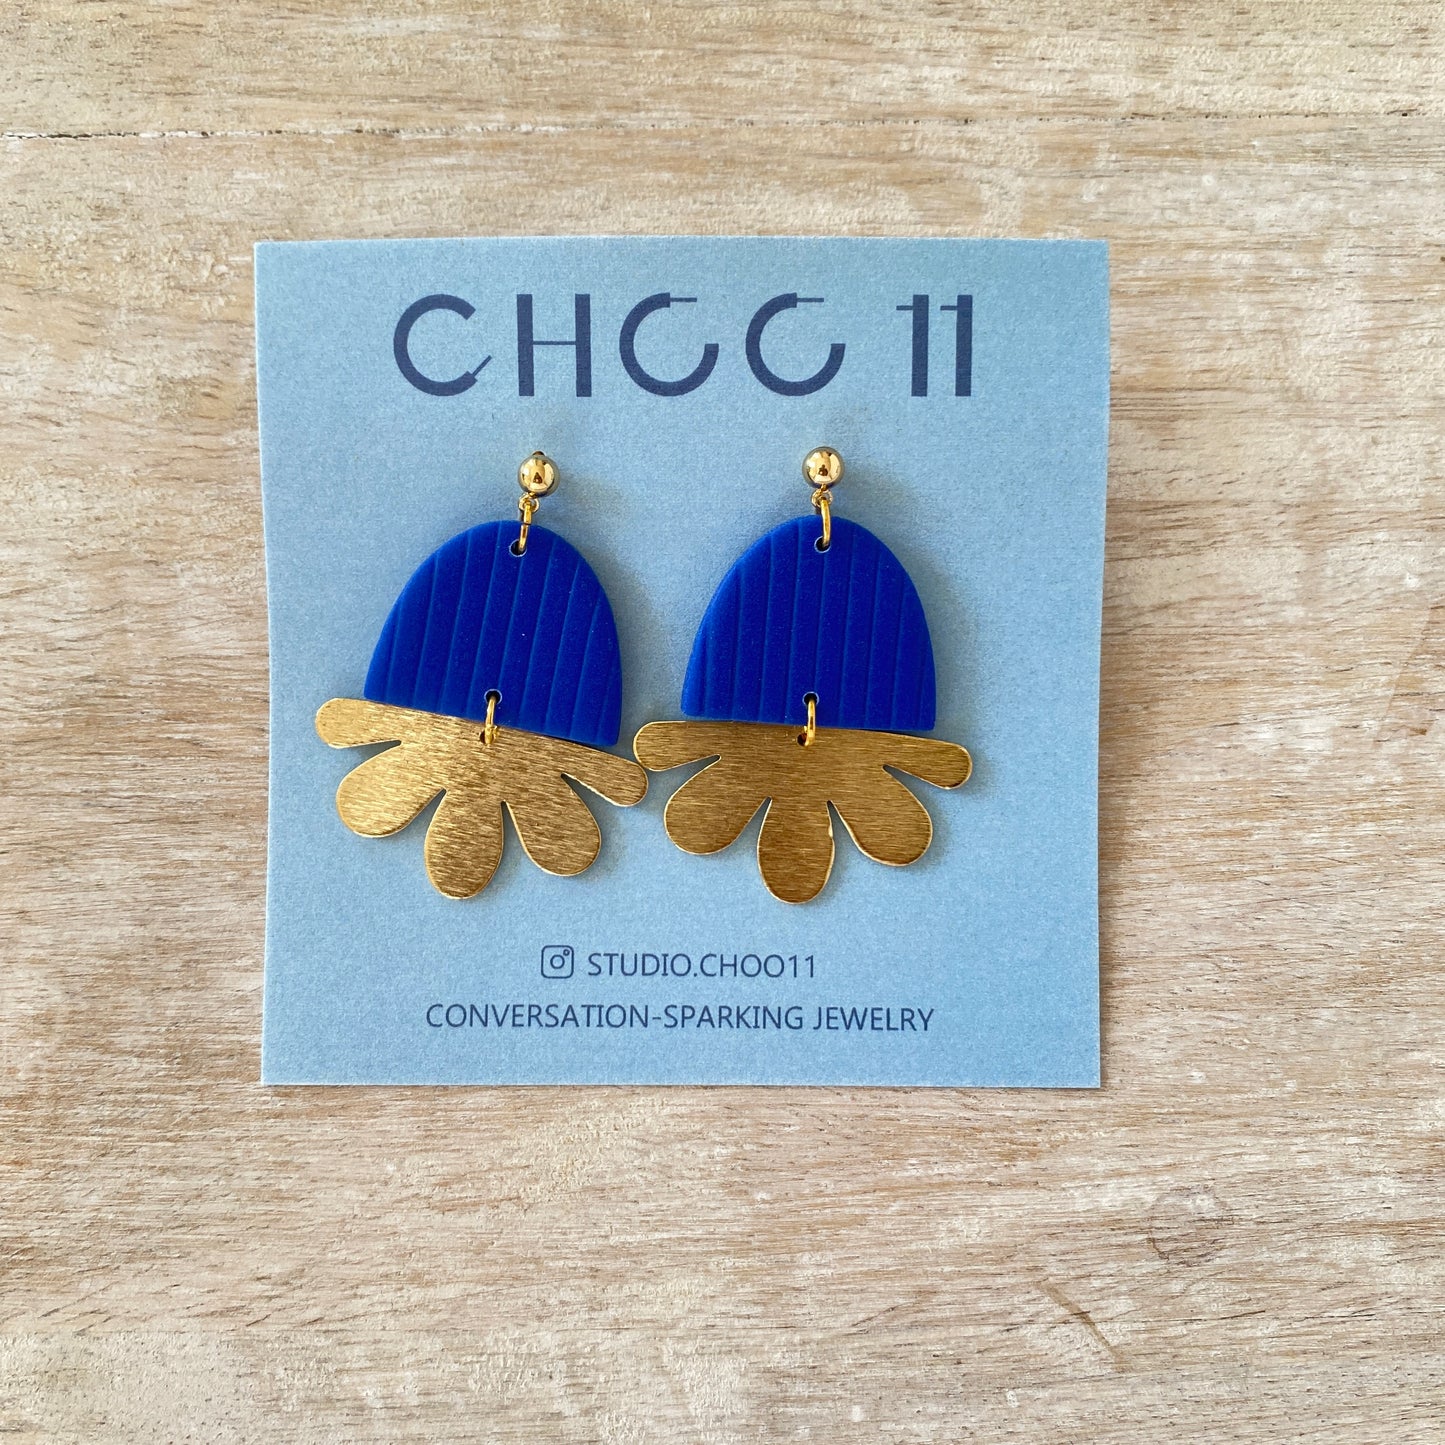 Choo11 Earrings - Amanda